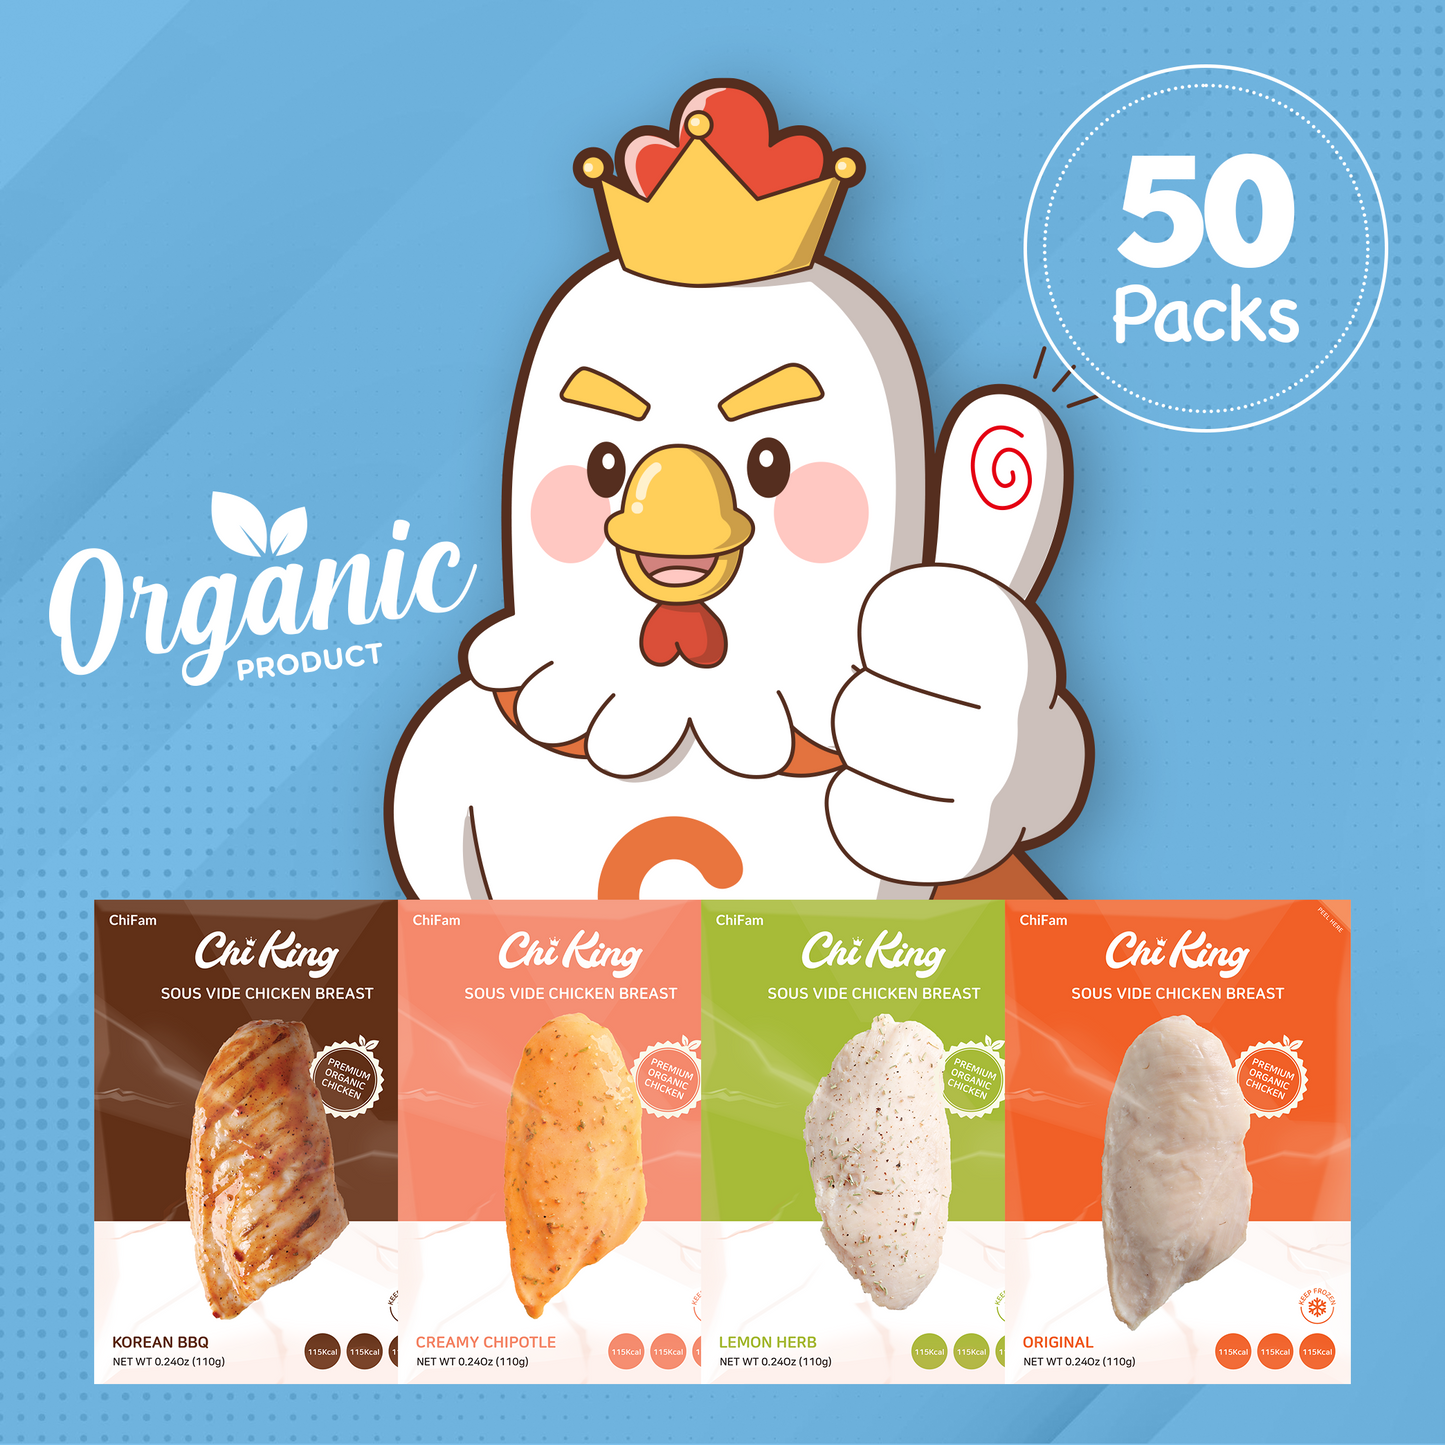 Organic 50 Pack Box